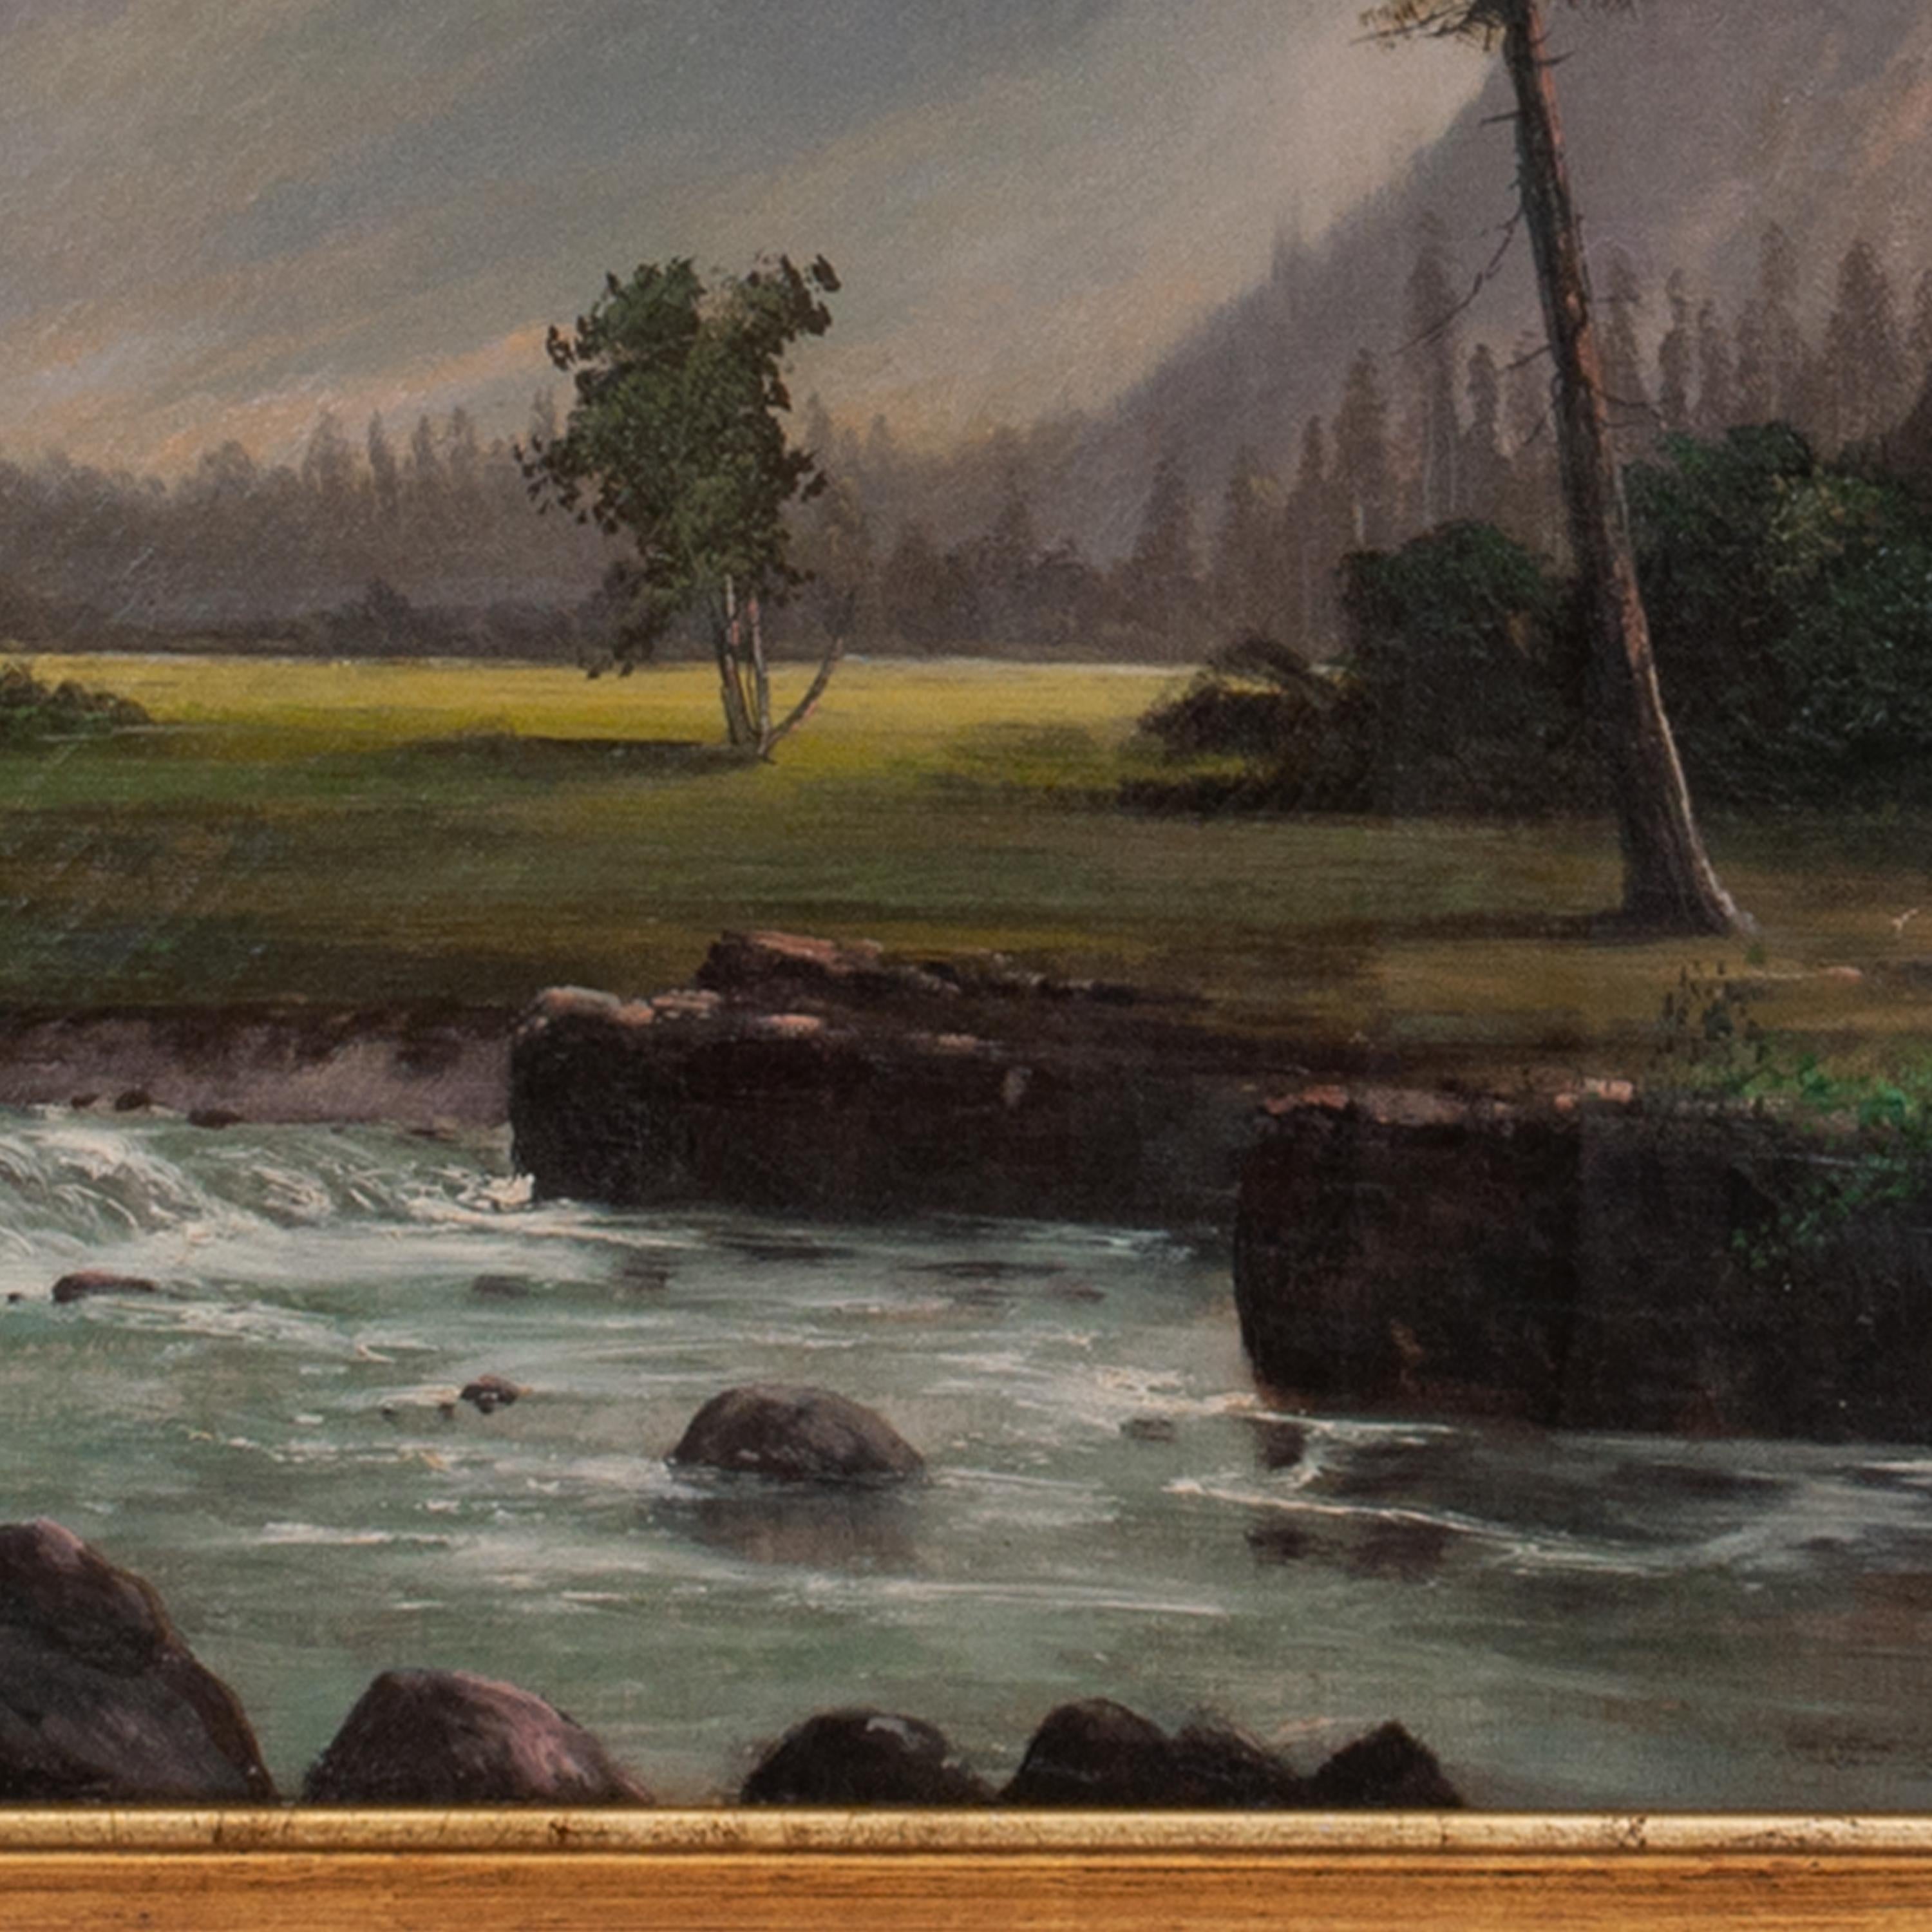 Grande huile sur toile de l'artiste californien William Weaver Armstrong (1862-1906), paysage du Mont Hood dans l'Oregon, vers 1885.
Ce grand paysage représente le majestueux Mont Hood et le paysage boisé en contrebas avec la rivière White au